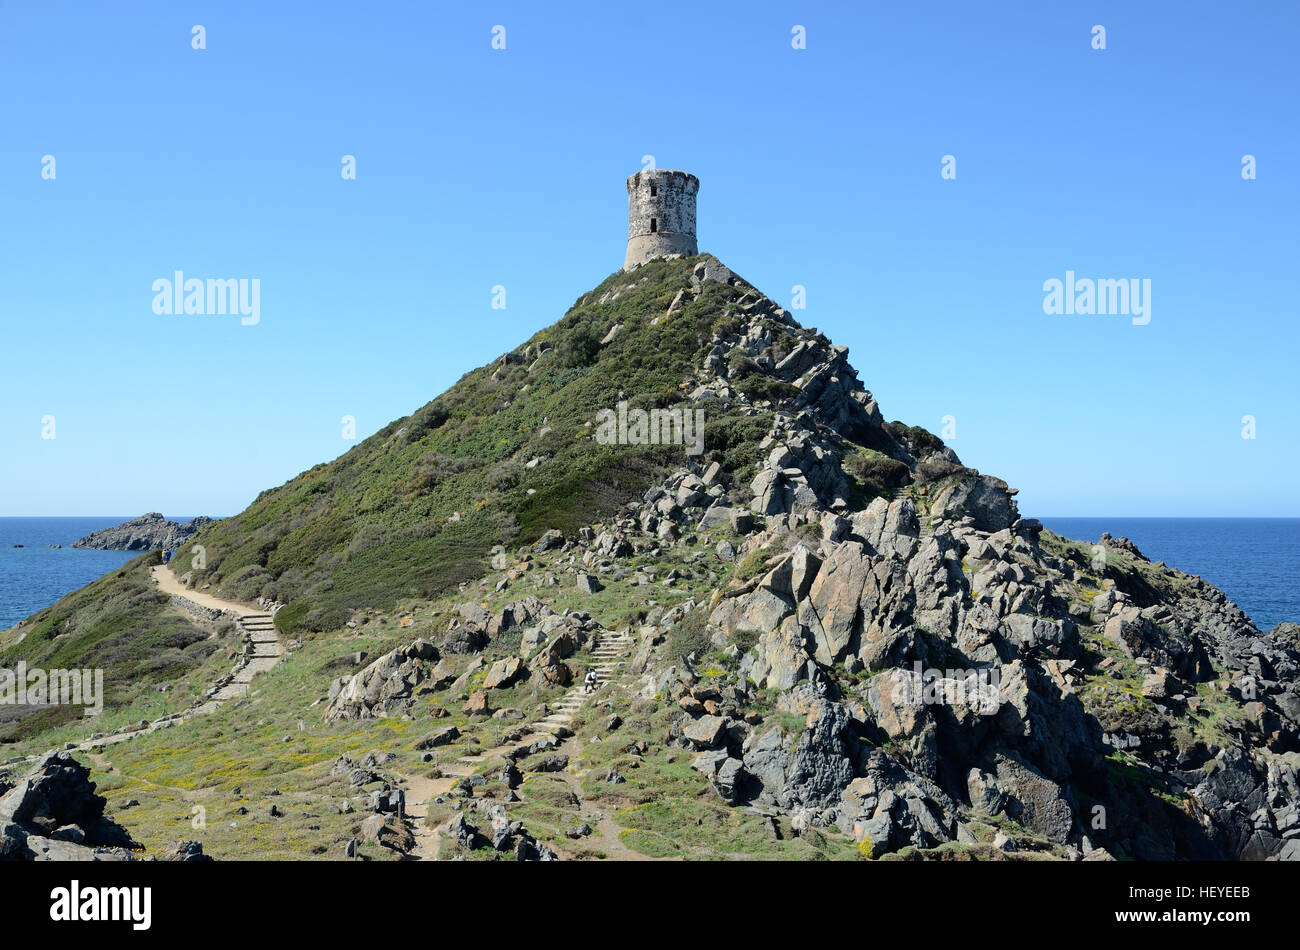 Pointe à Pointe de la Parata avec la tour génoise est situé près des îles Sanguinaires (l'archipel des Sanguinaires) à environ 15 km Banque D'Images